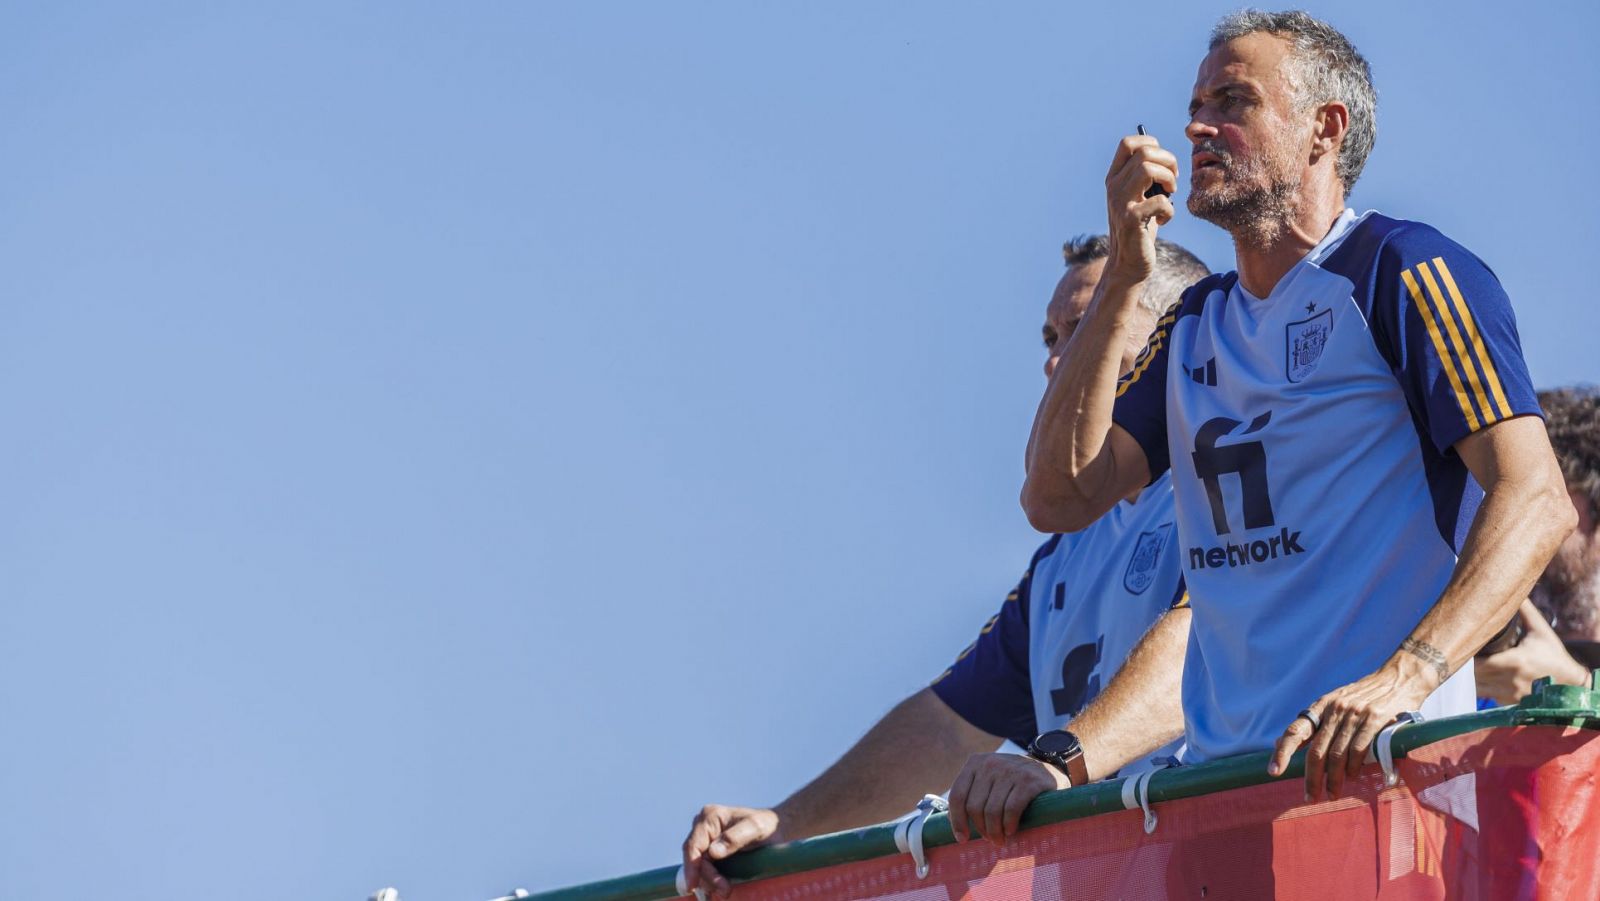 Del andamio al walkie talkie, con la pantalla gigante: la tecnolog�a al servicio de Luis Enrique